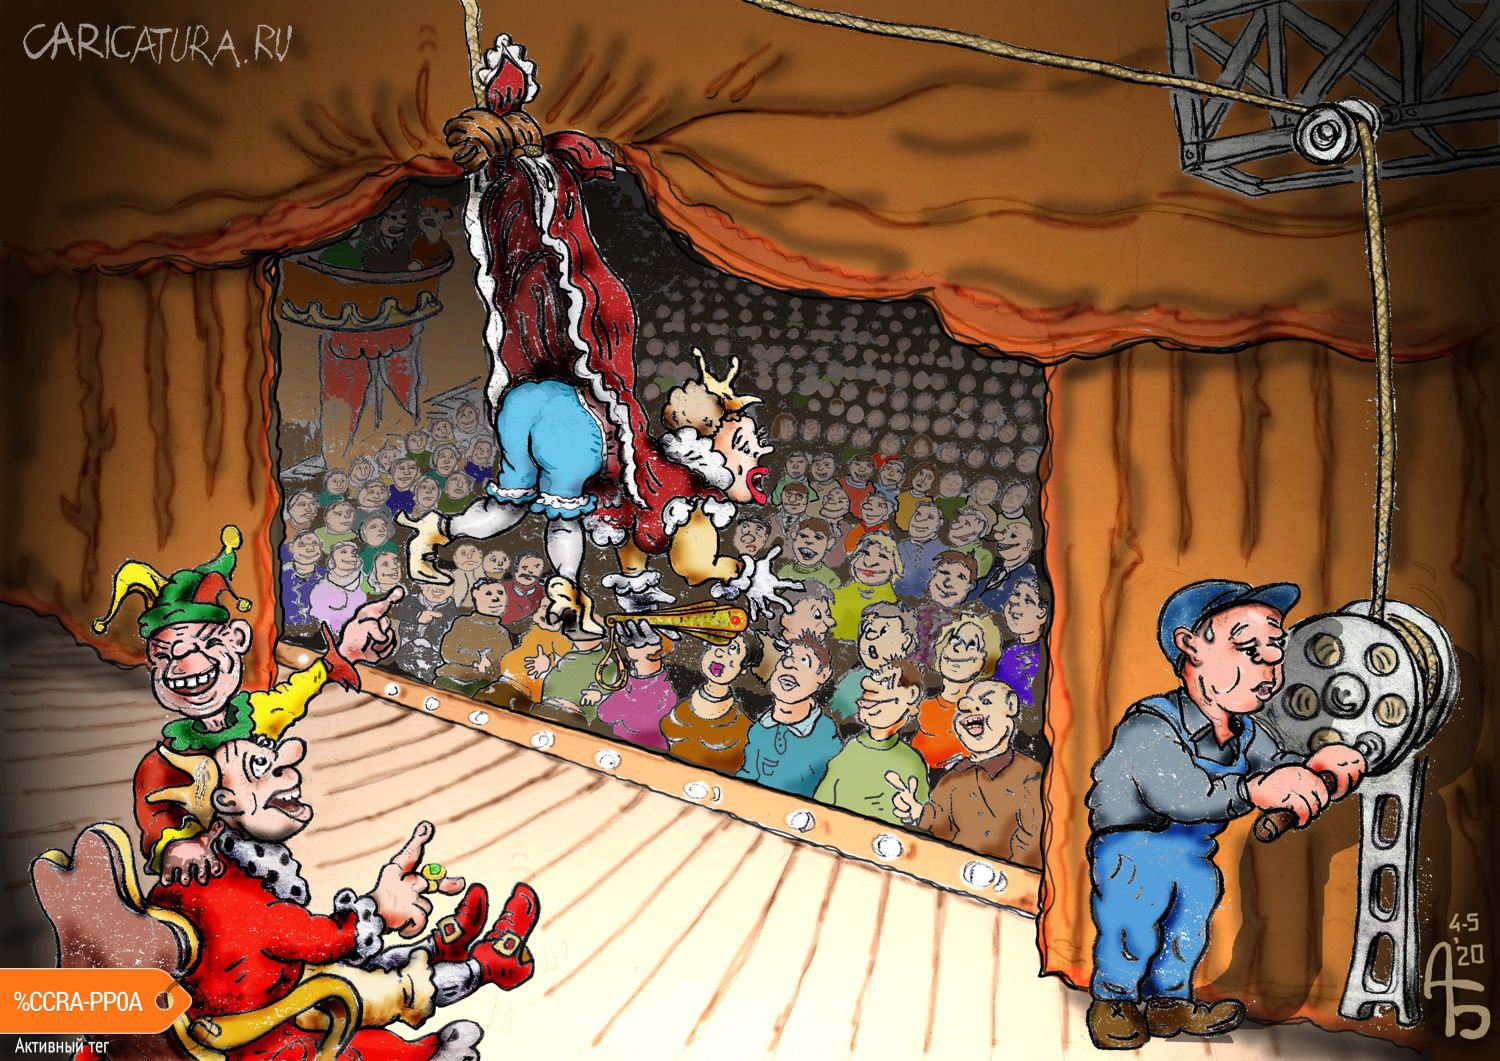 Карикатура "Шуточка", Александр Богданов